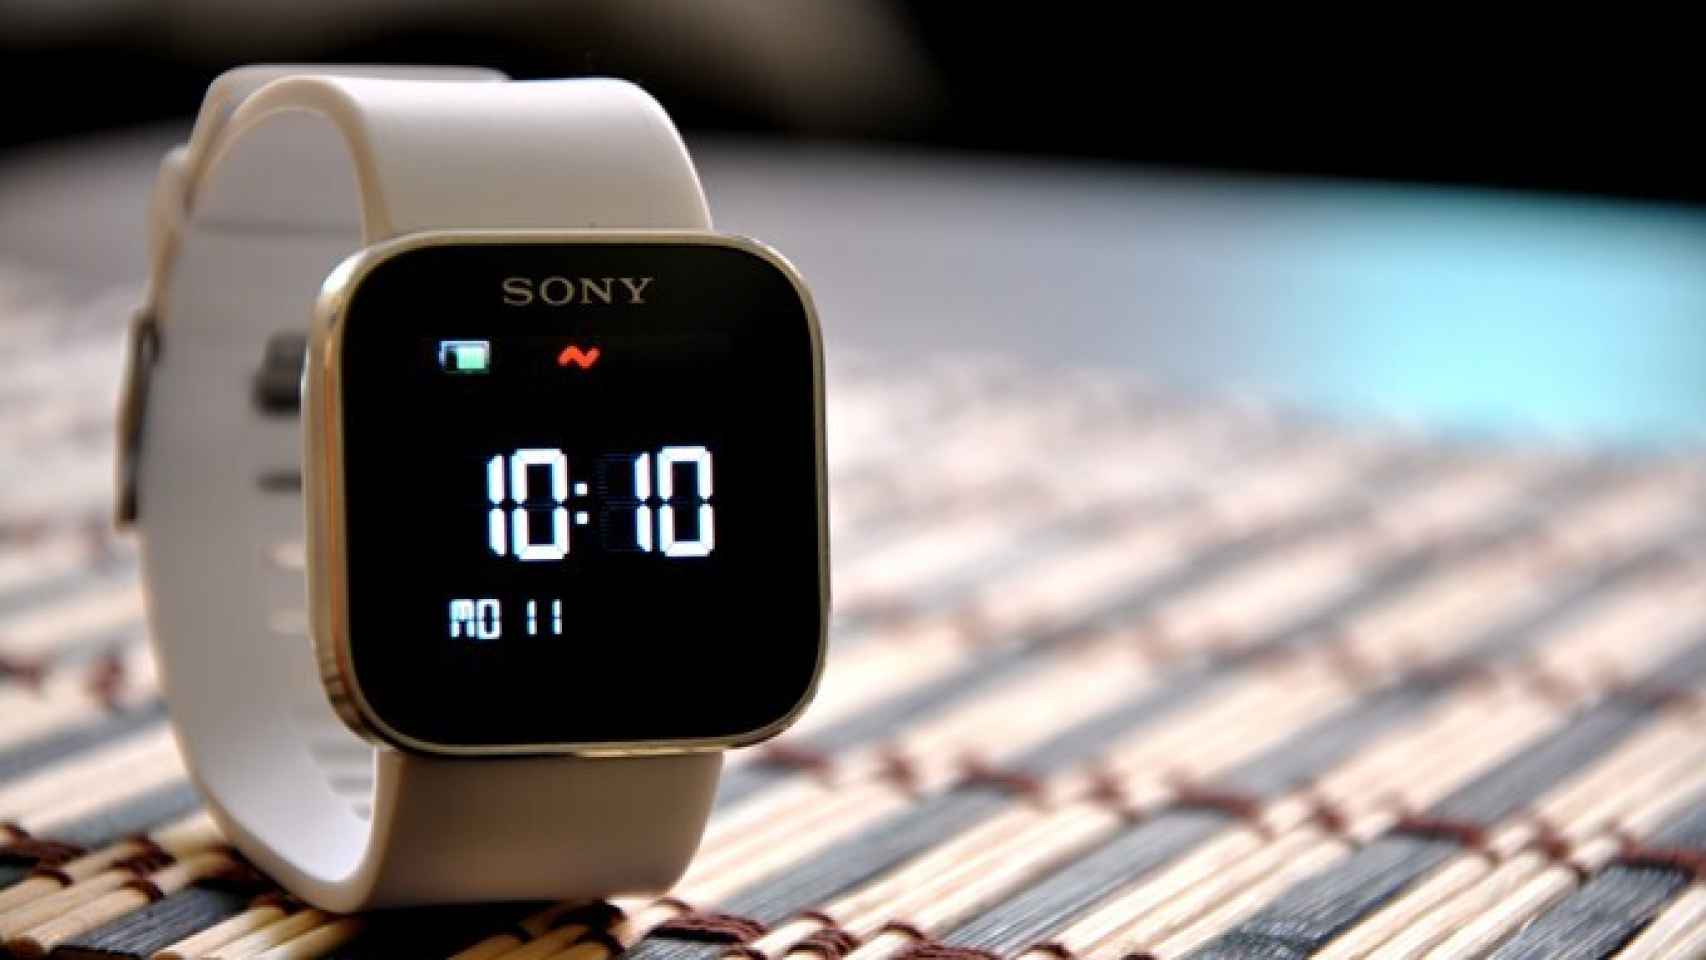 Sony SmartWatch: Análisis a fondo y experiencia de uso del reloj inteligente con Android